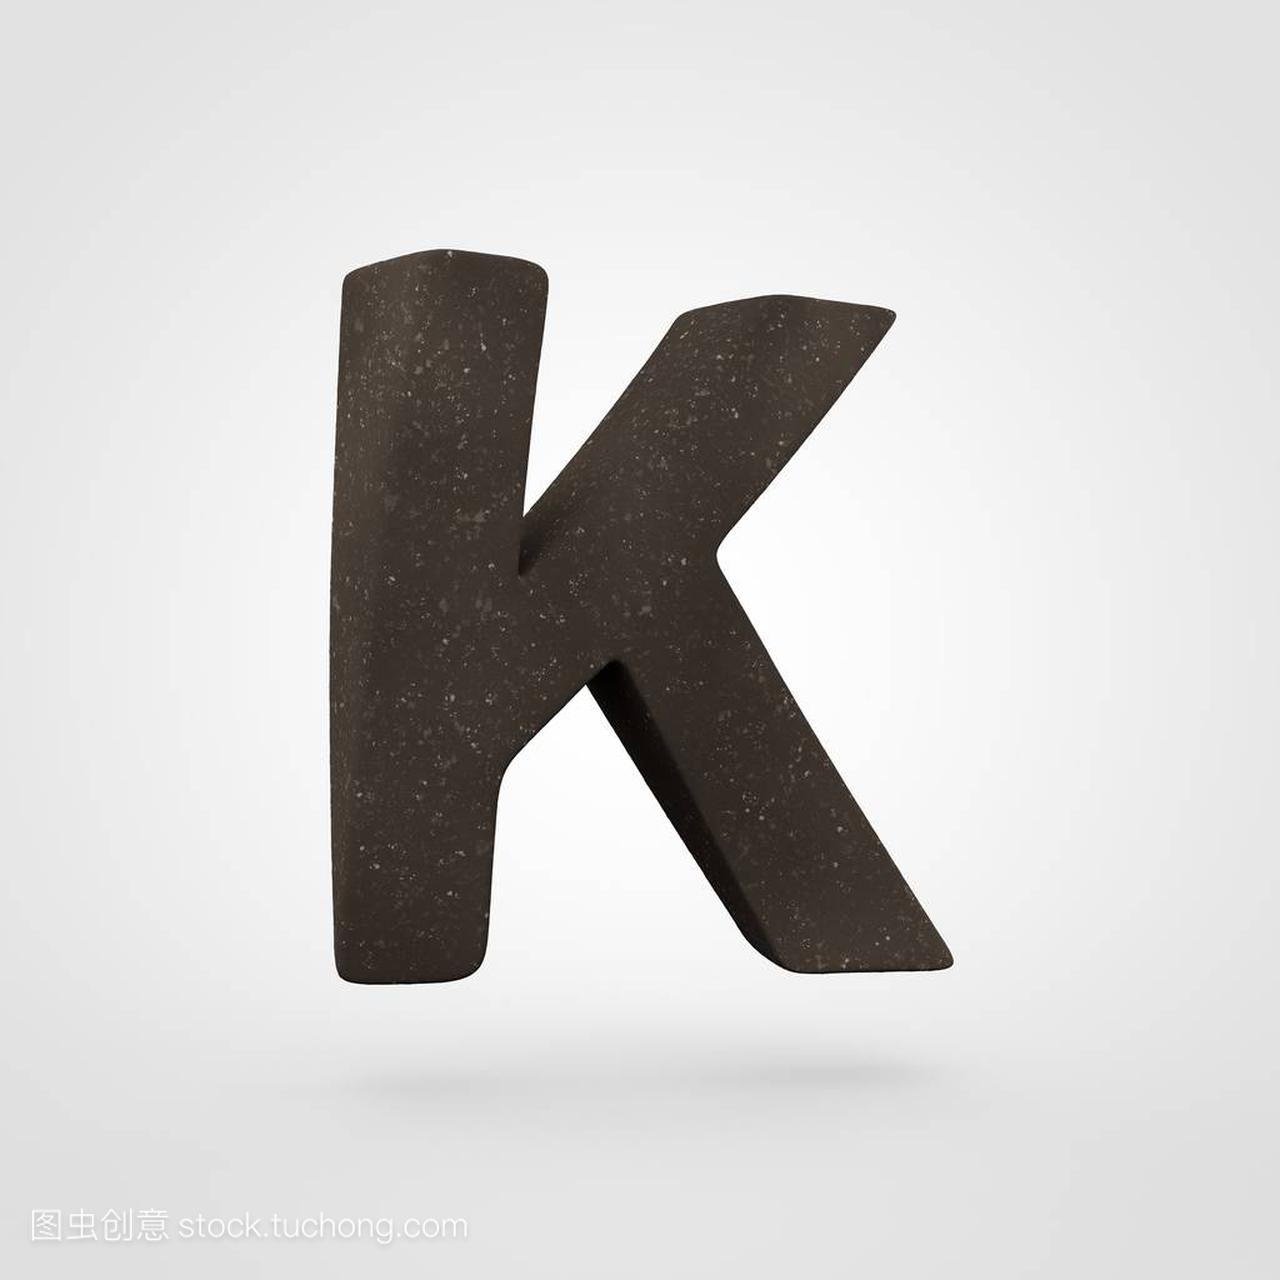 土壤字母 K 大写